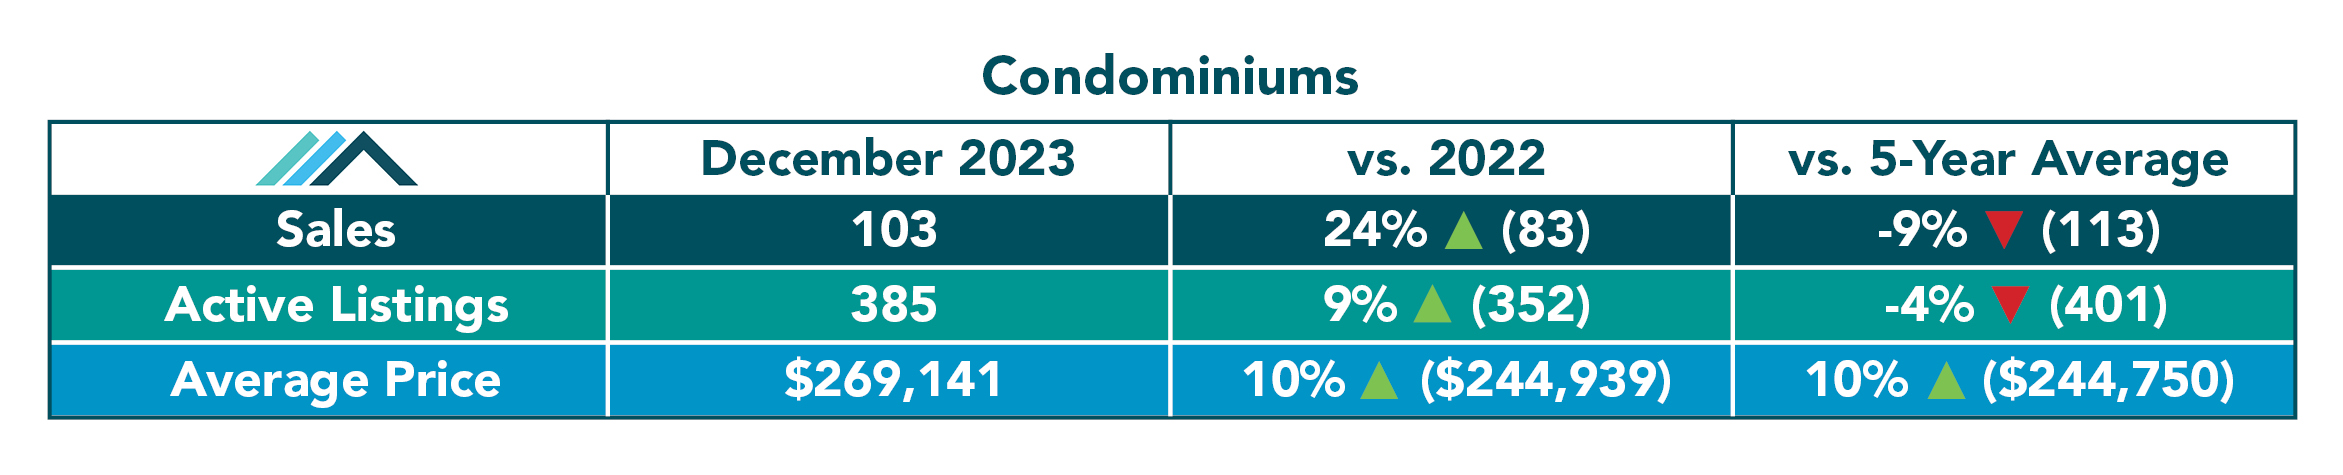 Condominium Tables December 2023.jpg (425 KB)